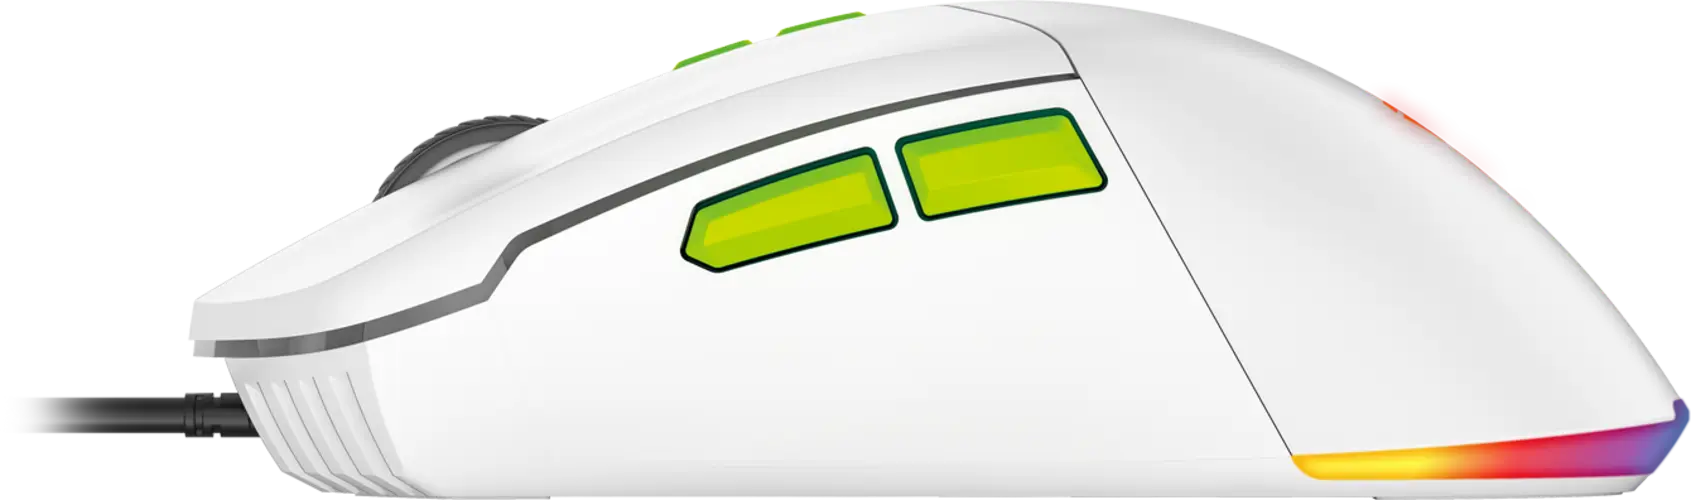 ماوس جيمنج PHANTOM II VX6 سلكي بإضاءة أر جي بي من فانتيك - أبيض